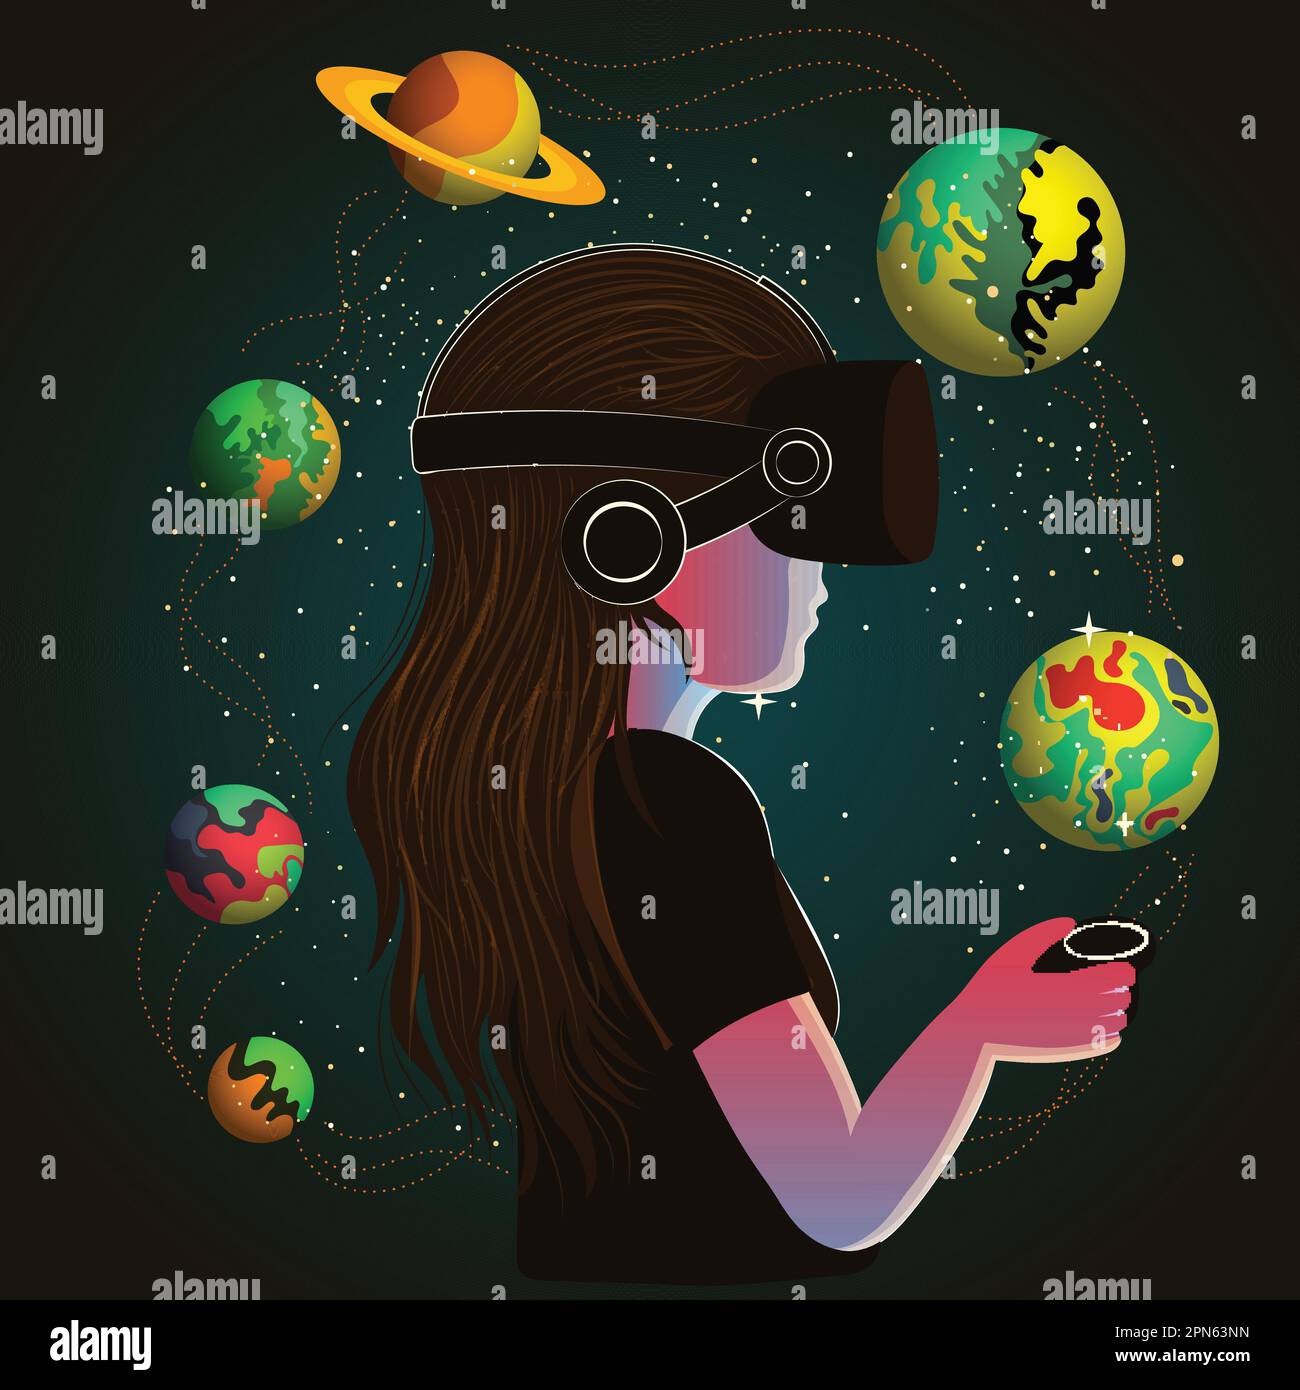 Jeune fille personnage portant un casque VR et utilisant le contrôleur interagit avec des objets de l'espace extérieur sur fond vert foncé. Illustration de Vecteur